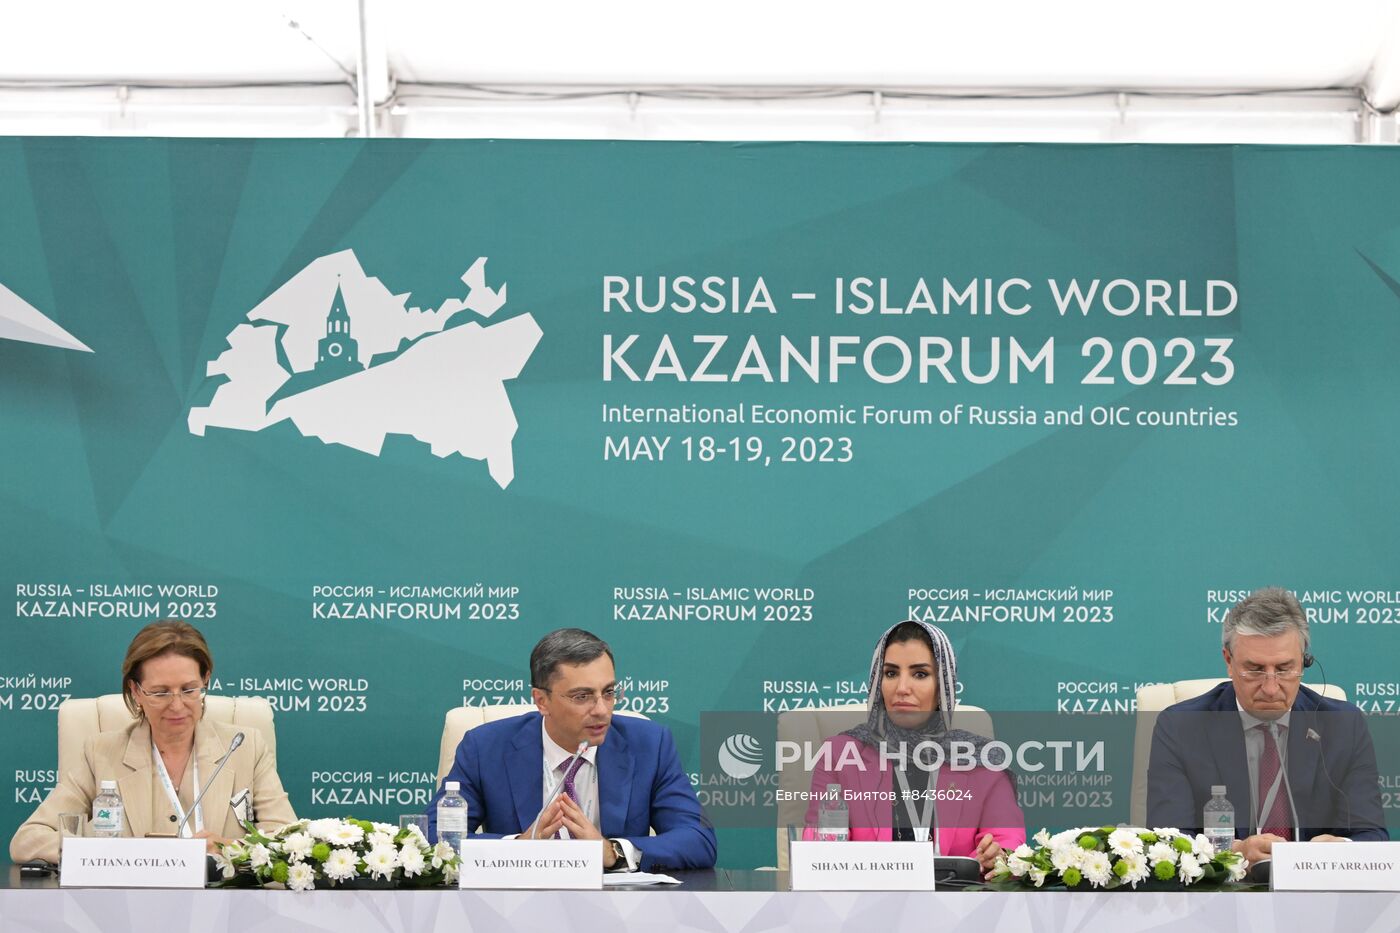 KAZANFORUM 2023. Пресс-конференция "Международная кооперация и инновации: новые возможности и перспективы для сотрудничества со странами Персидского залива"